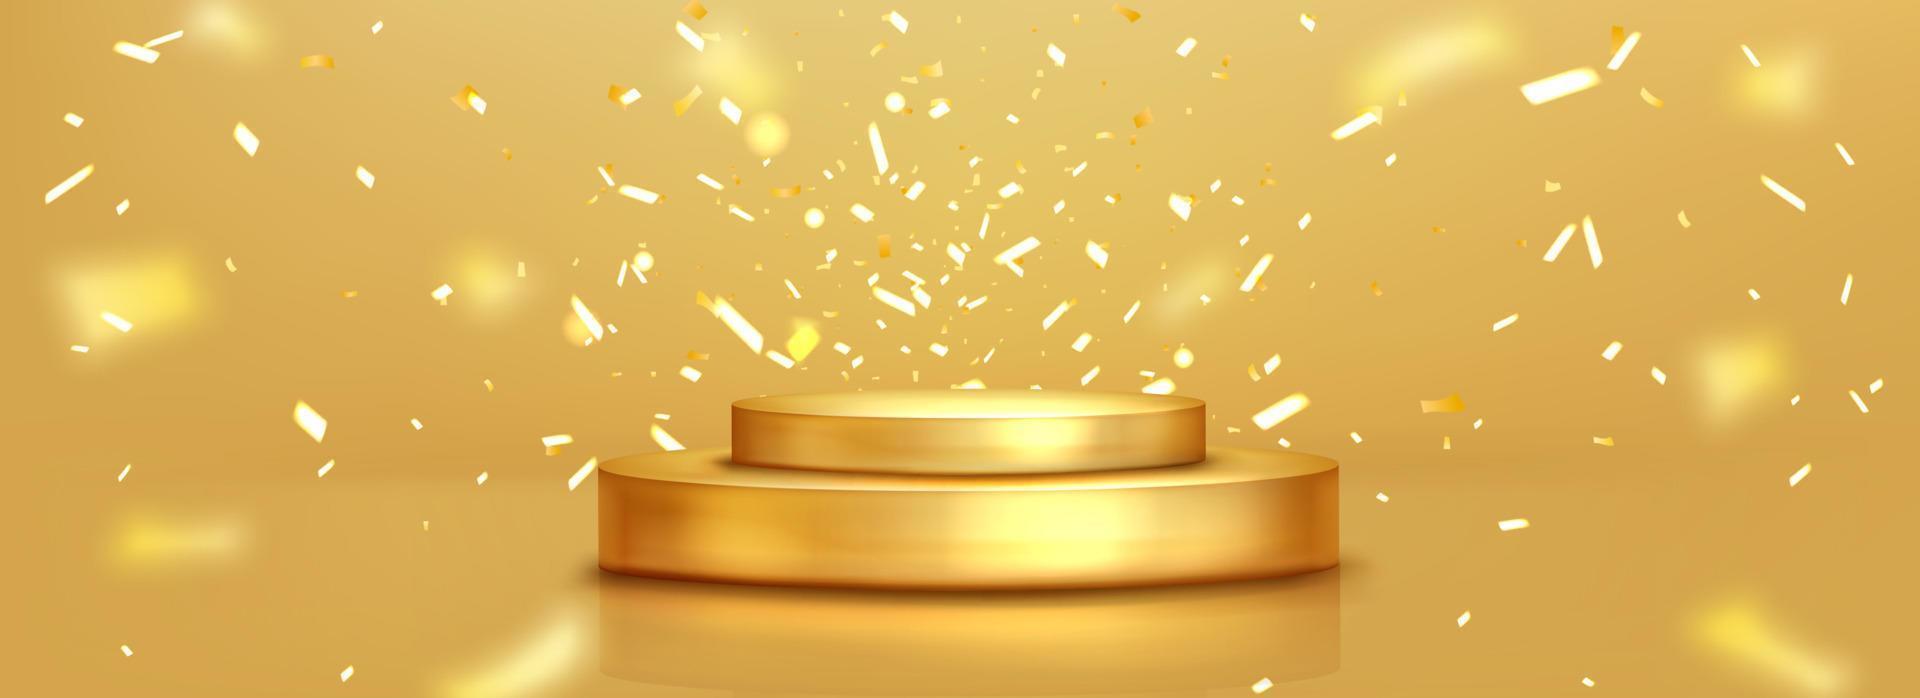 Realistic golden podium and sparkling confetti vector